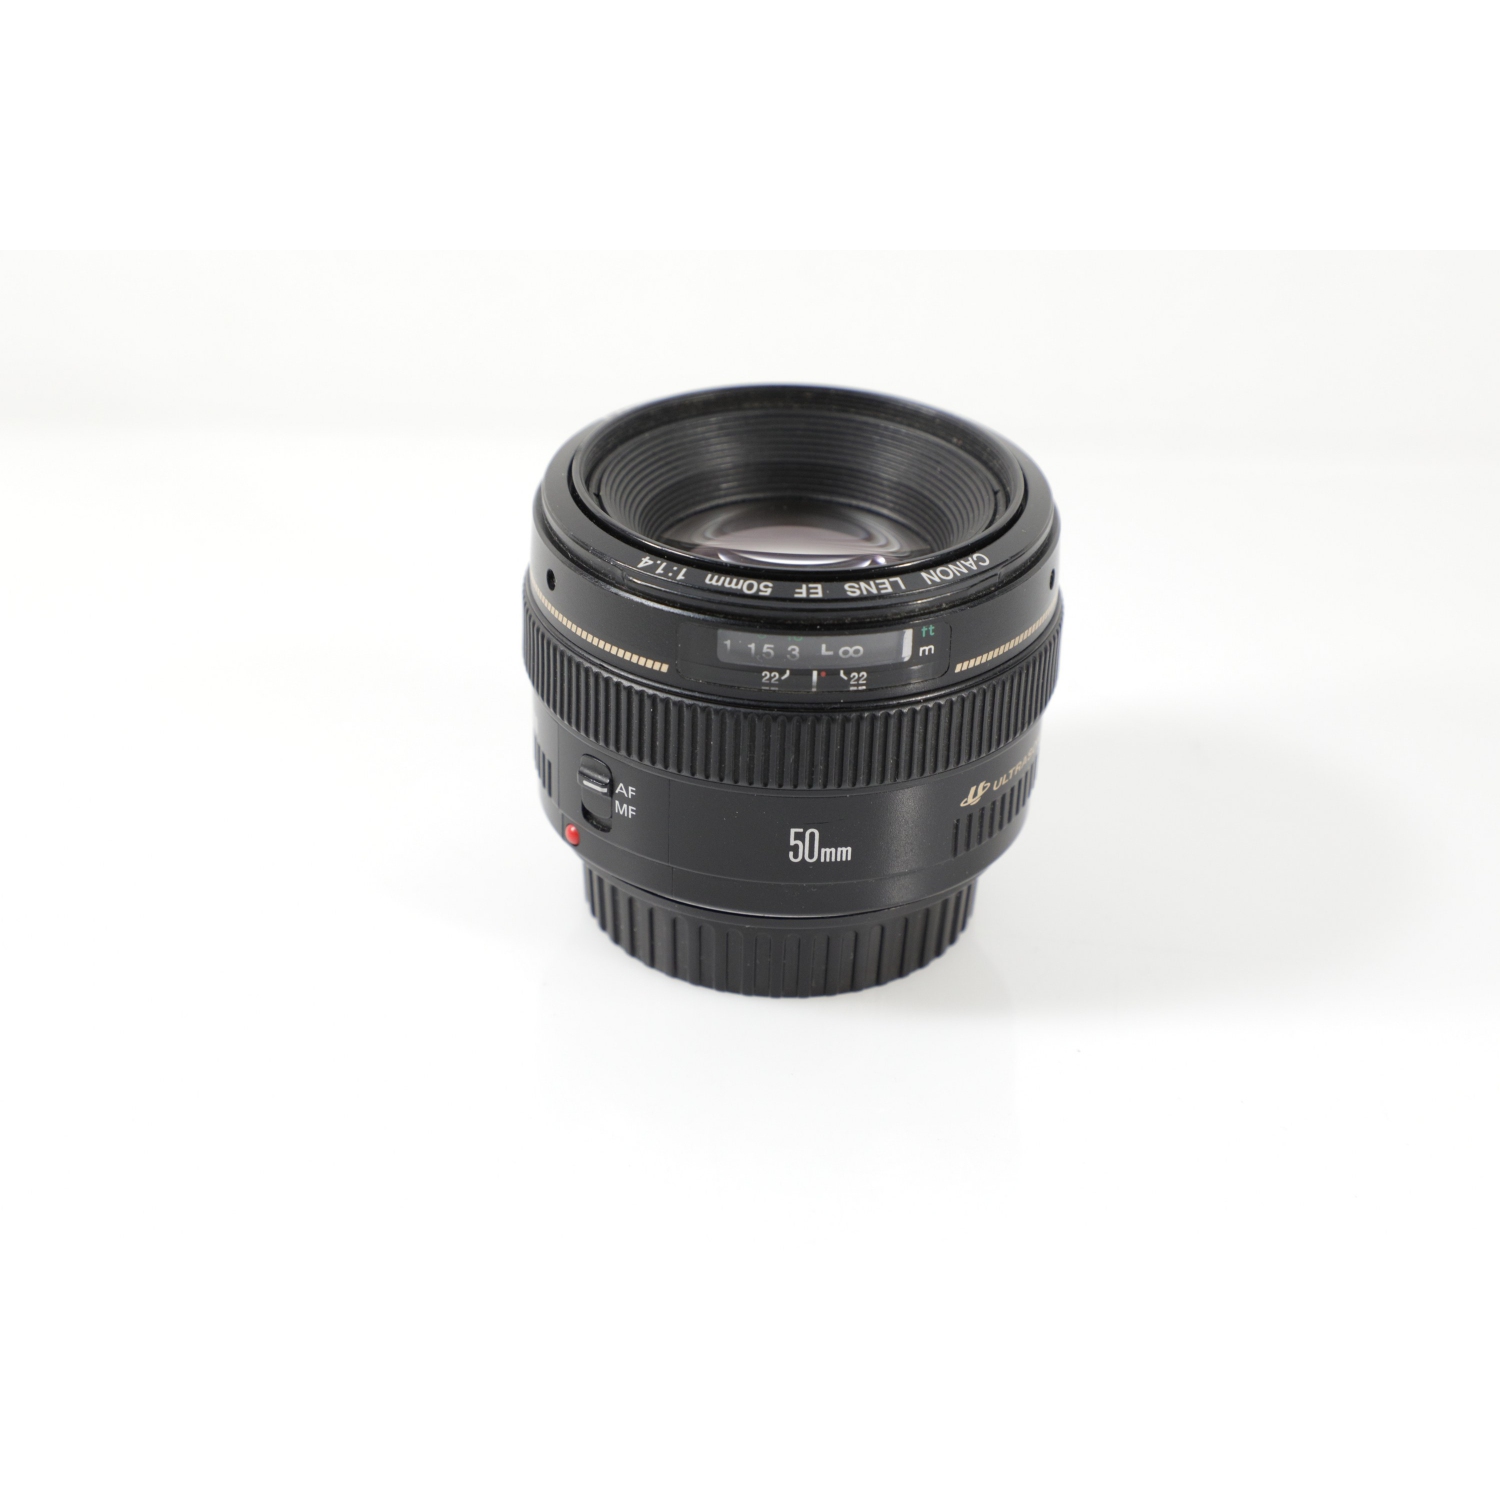 Refurbished (Good) - Canon EF 50mm F/1.4 USM Lens - EF-Mount Lens/Full-Frame Format